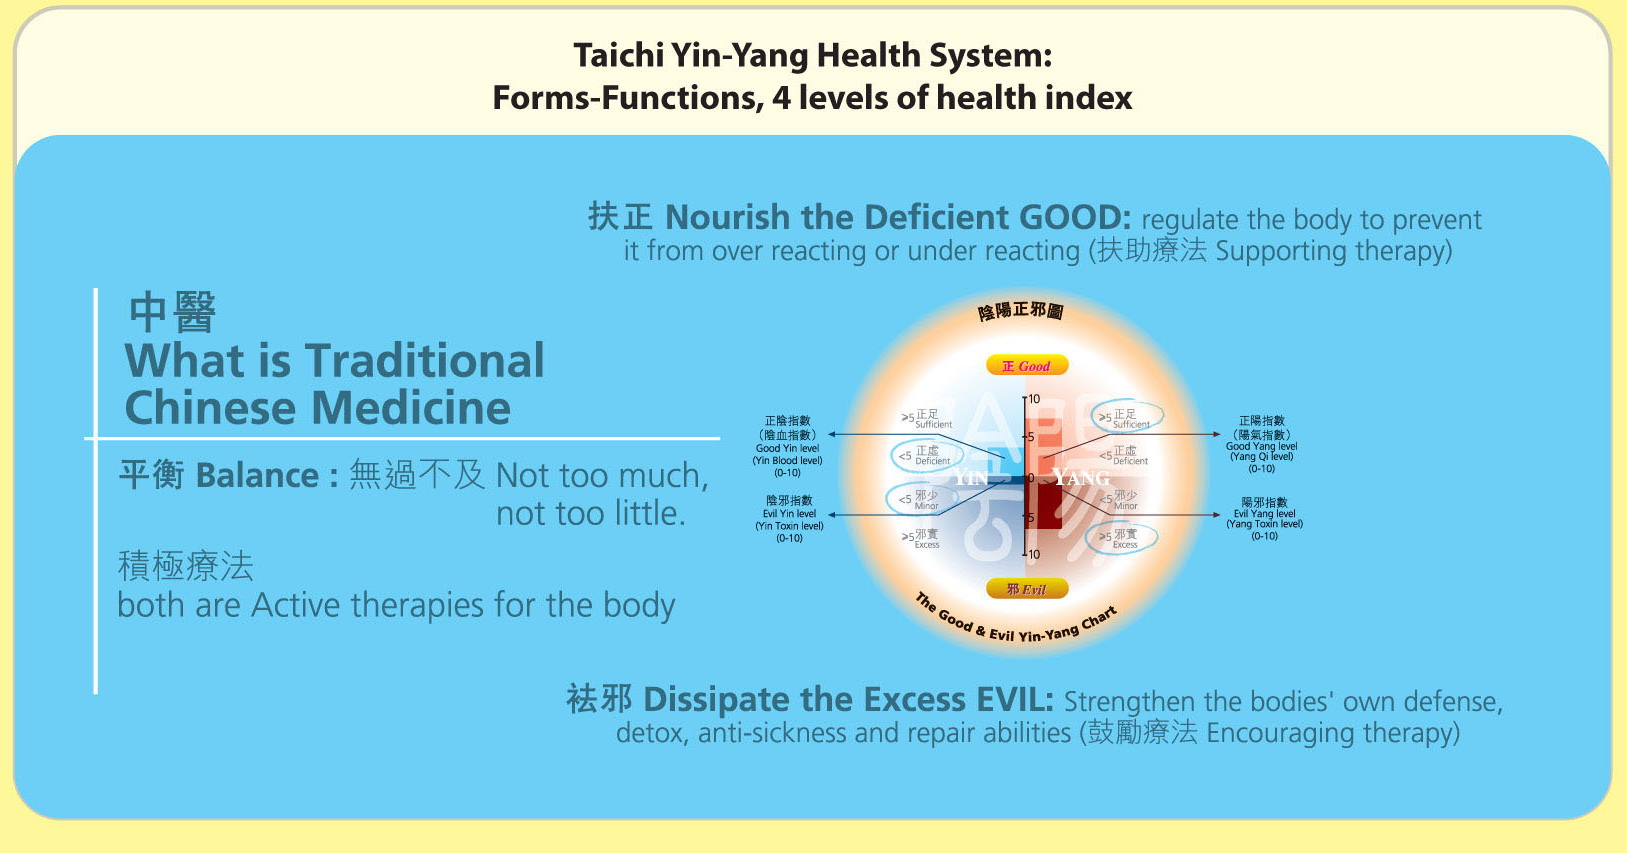 維他命C 的 中醫清熱與滋陰 Vitamin C is Yang Reducing and Yin Raising in TCM’s perspective